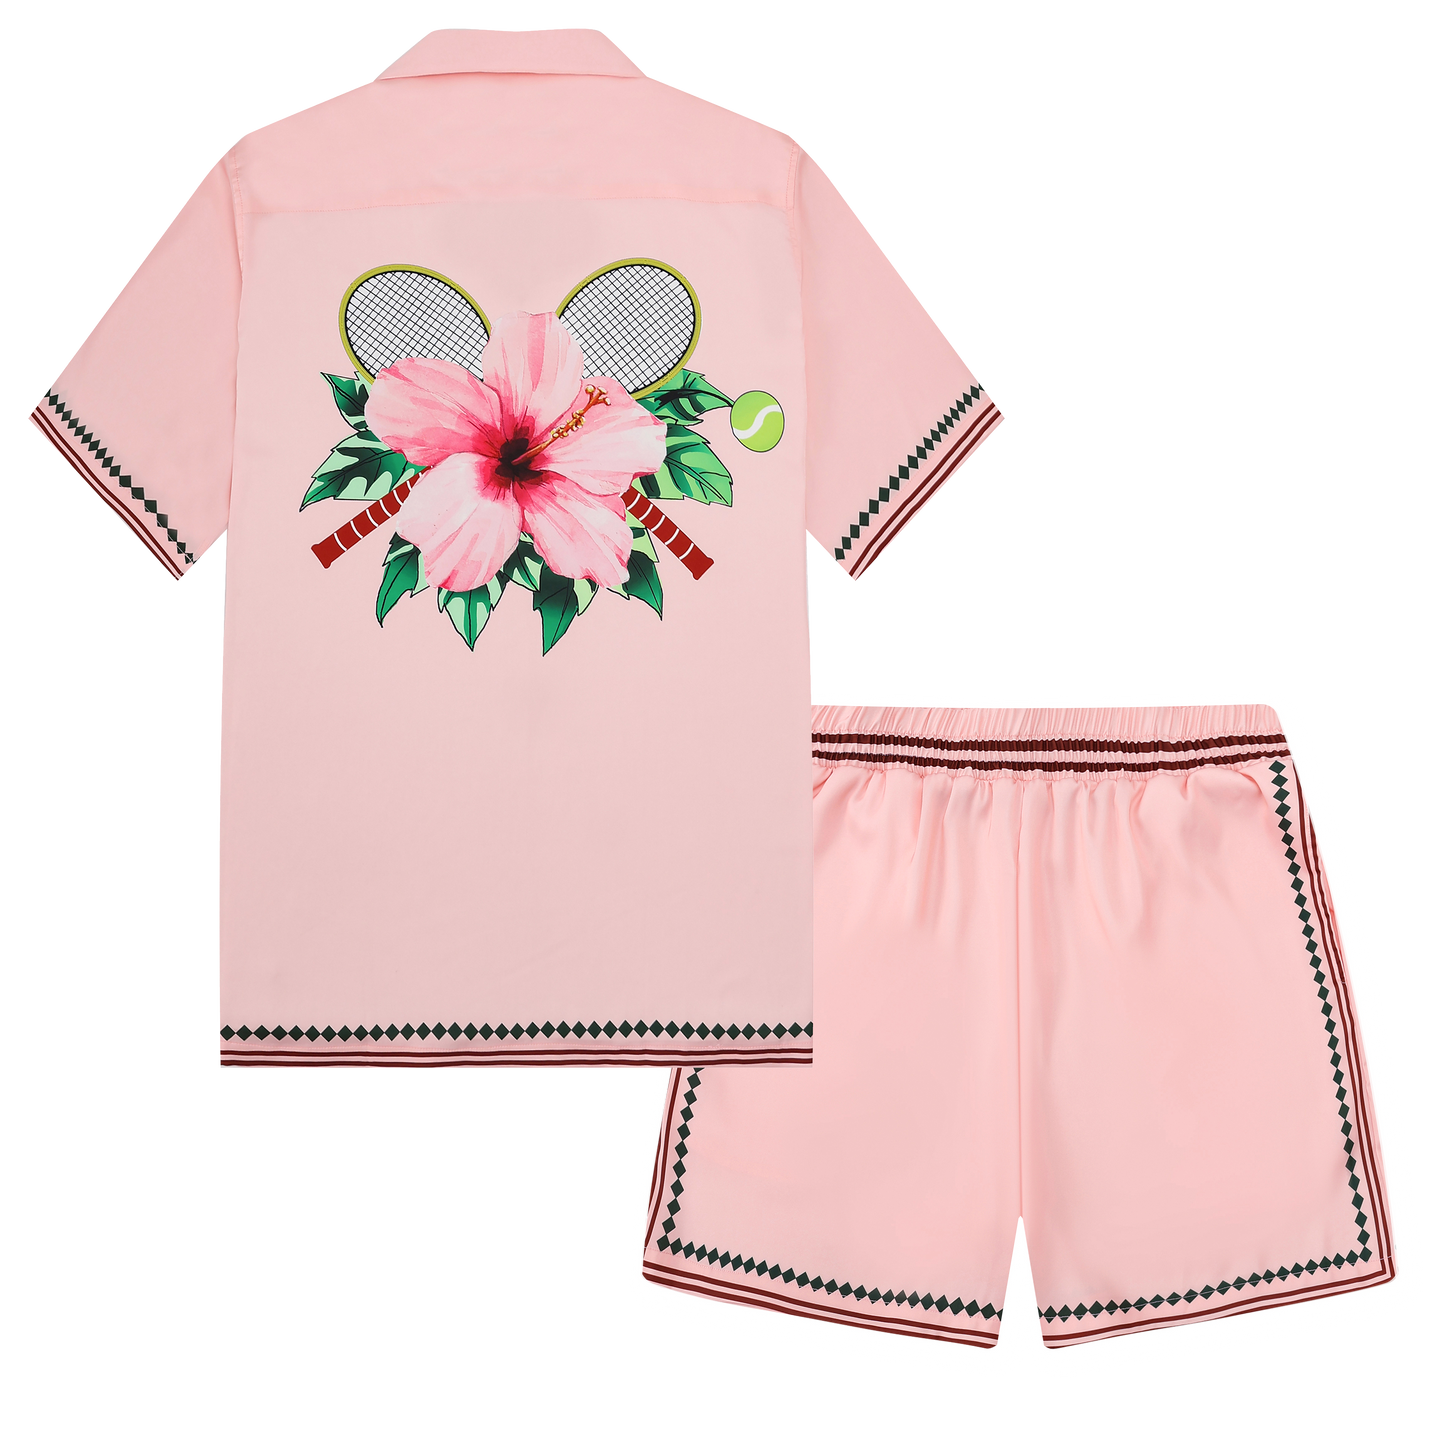 Pink Flower Design Short Sleeve Sports Shirt